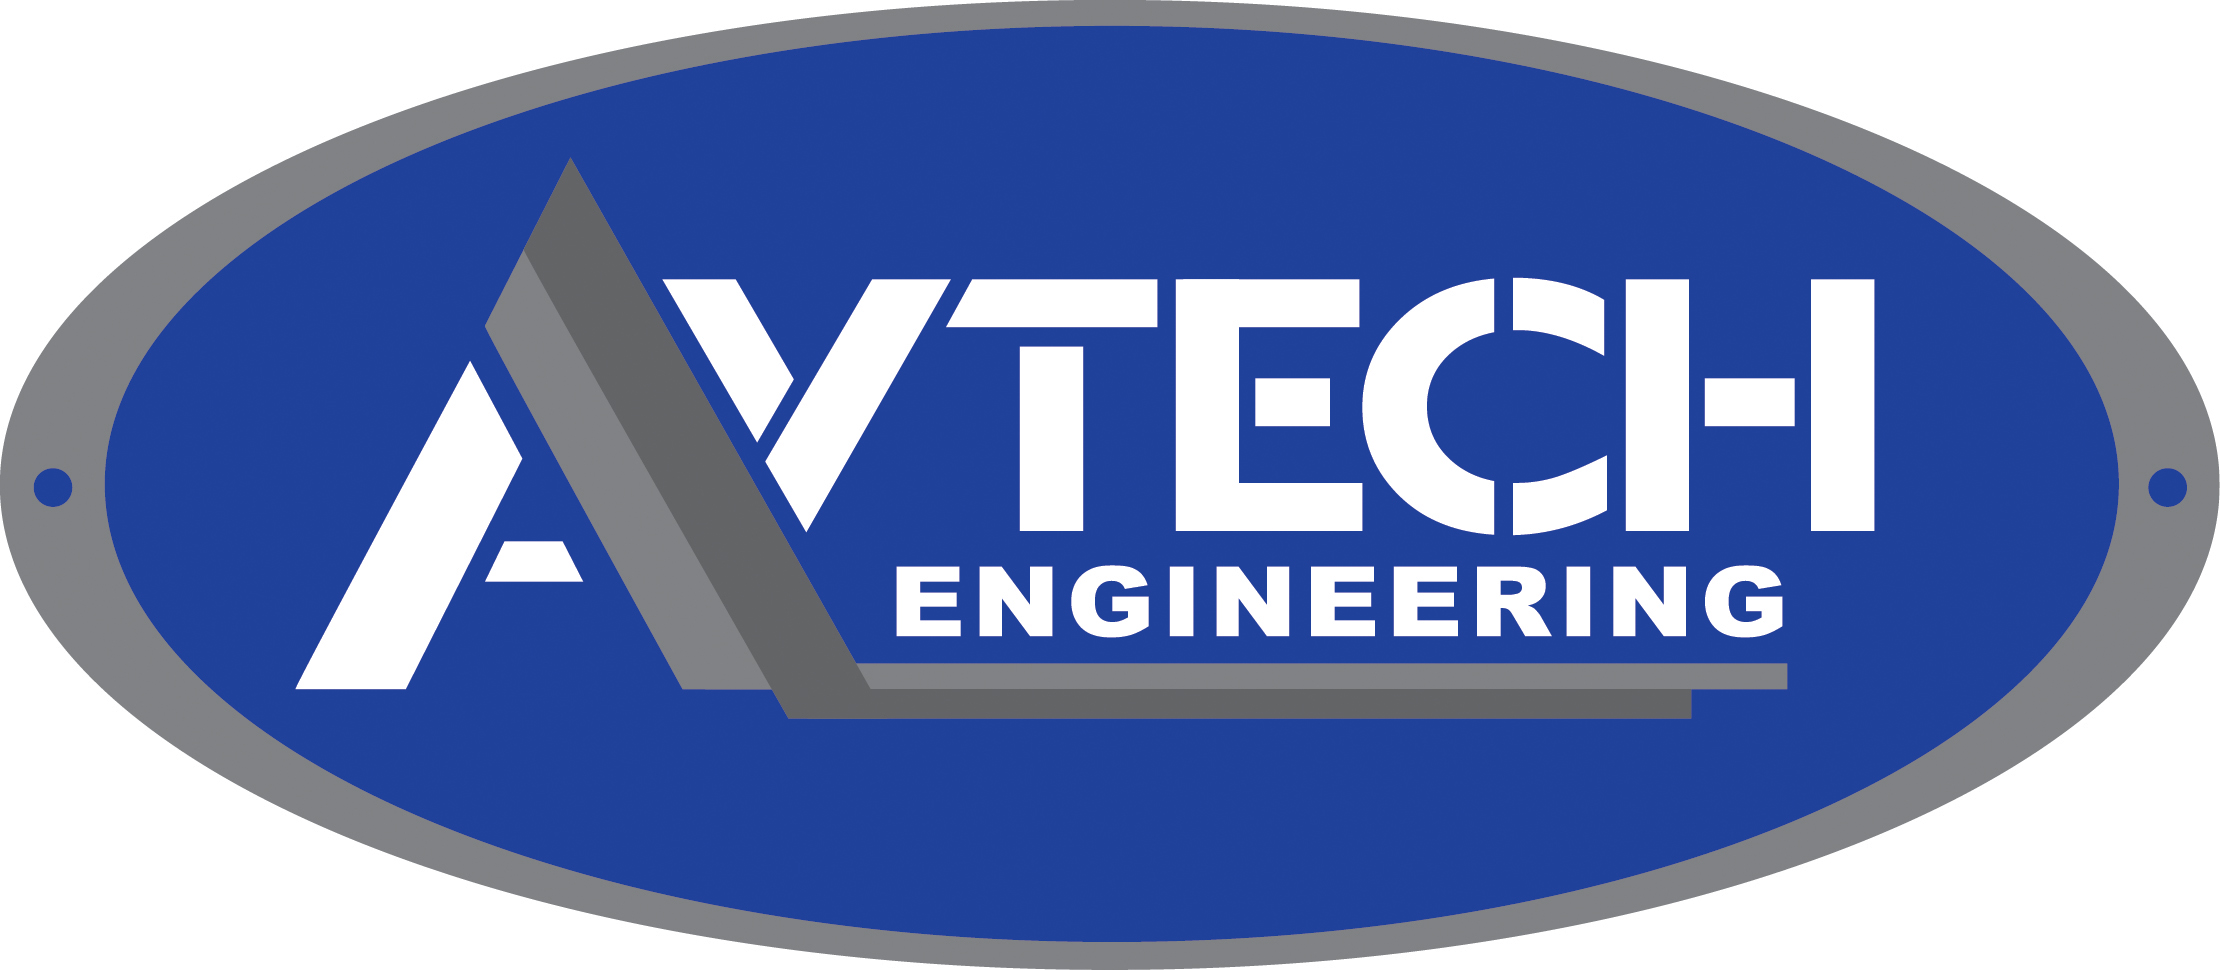 Avtech Engineering logo